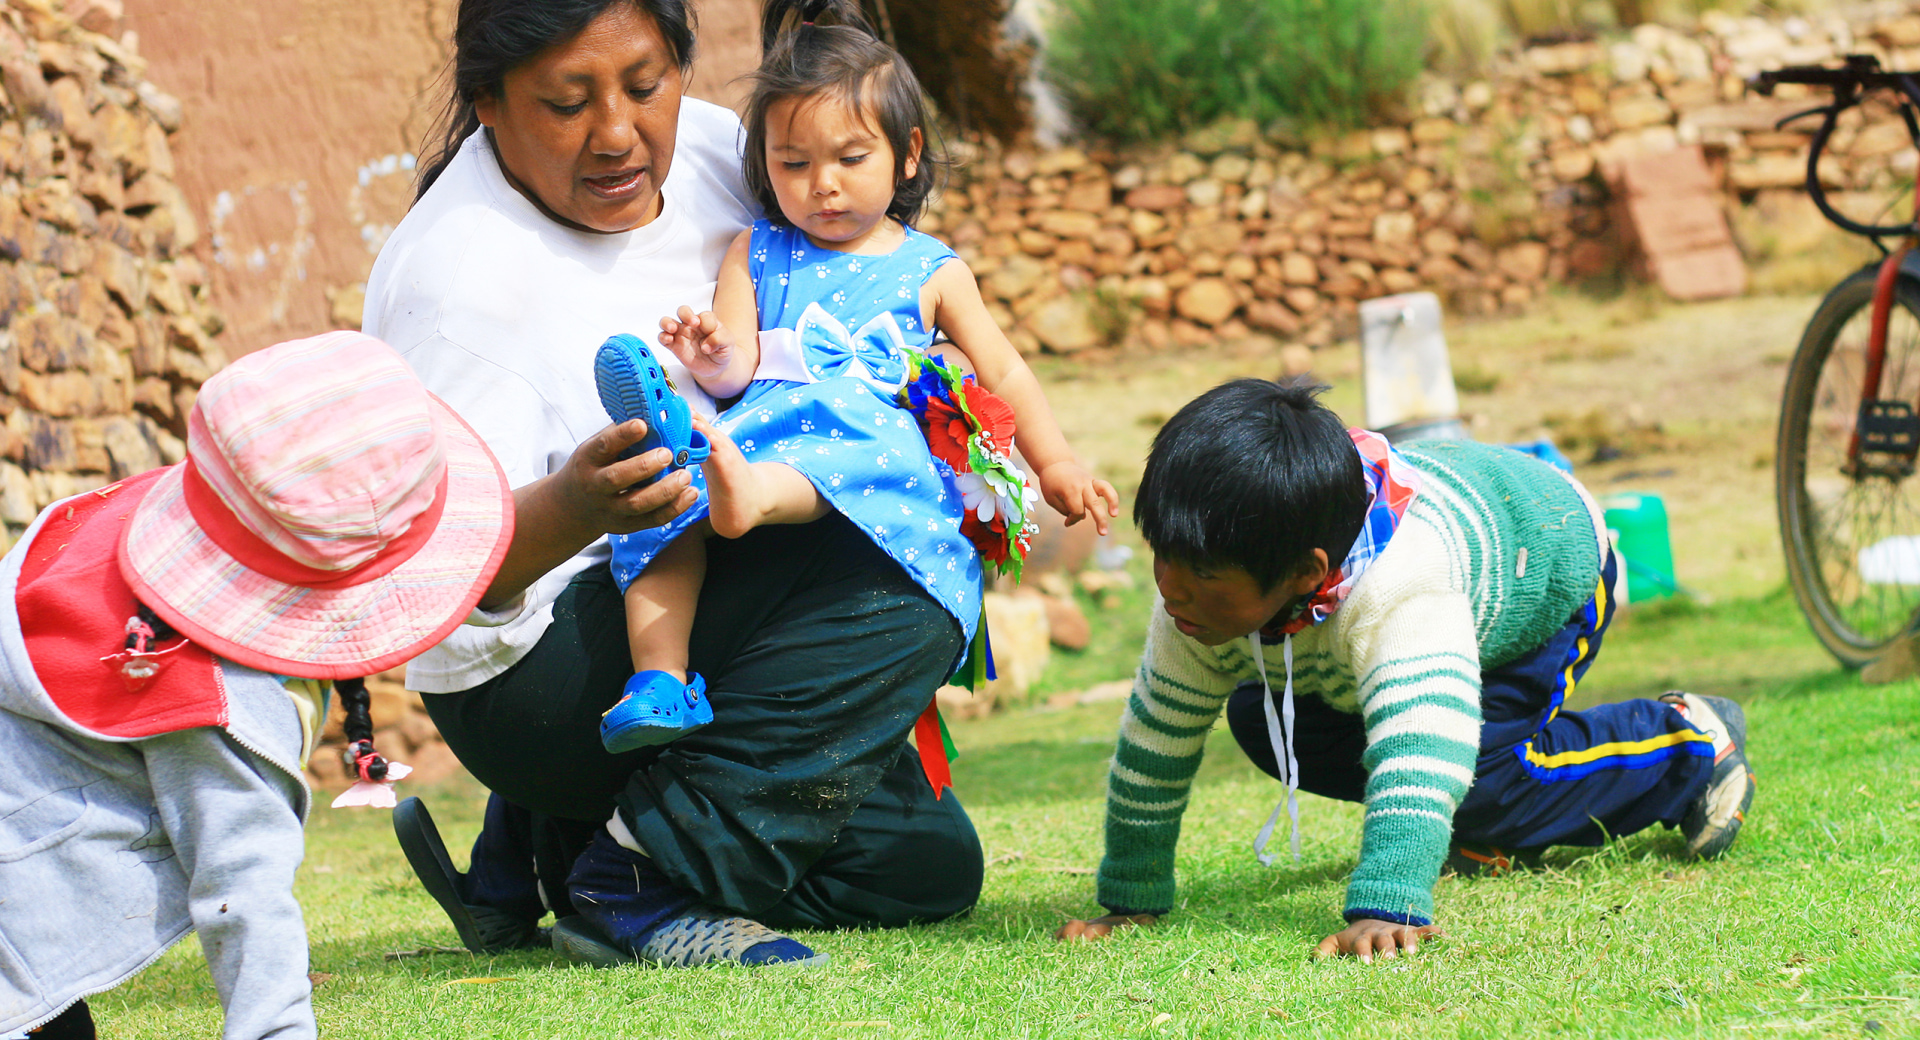 Chilé - Childcare home